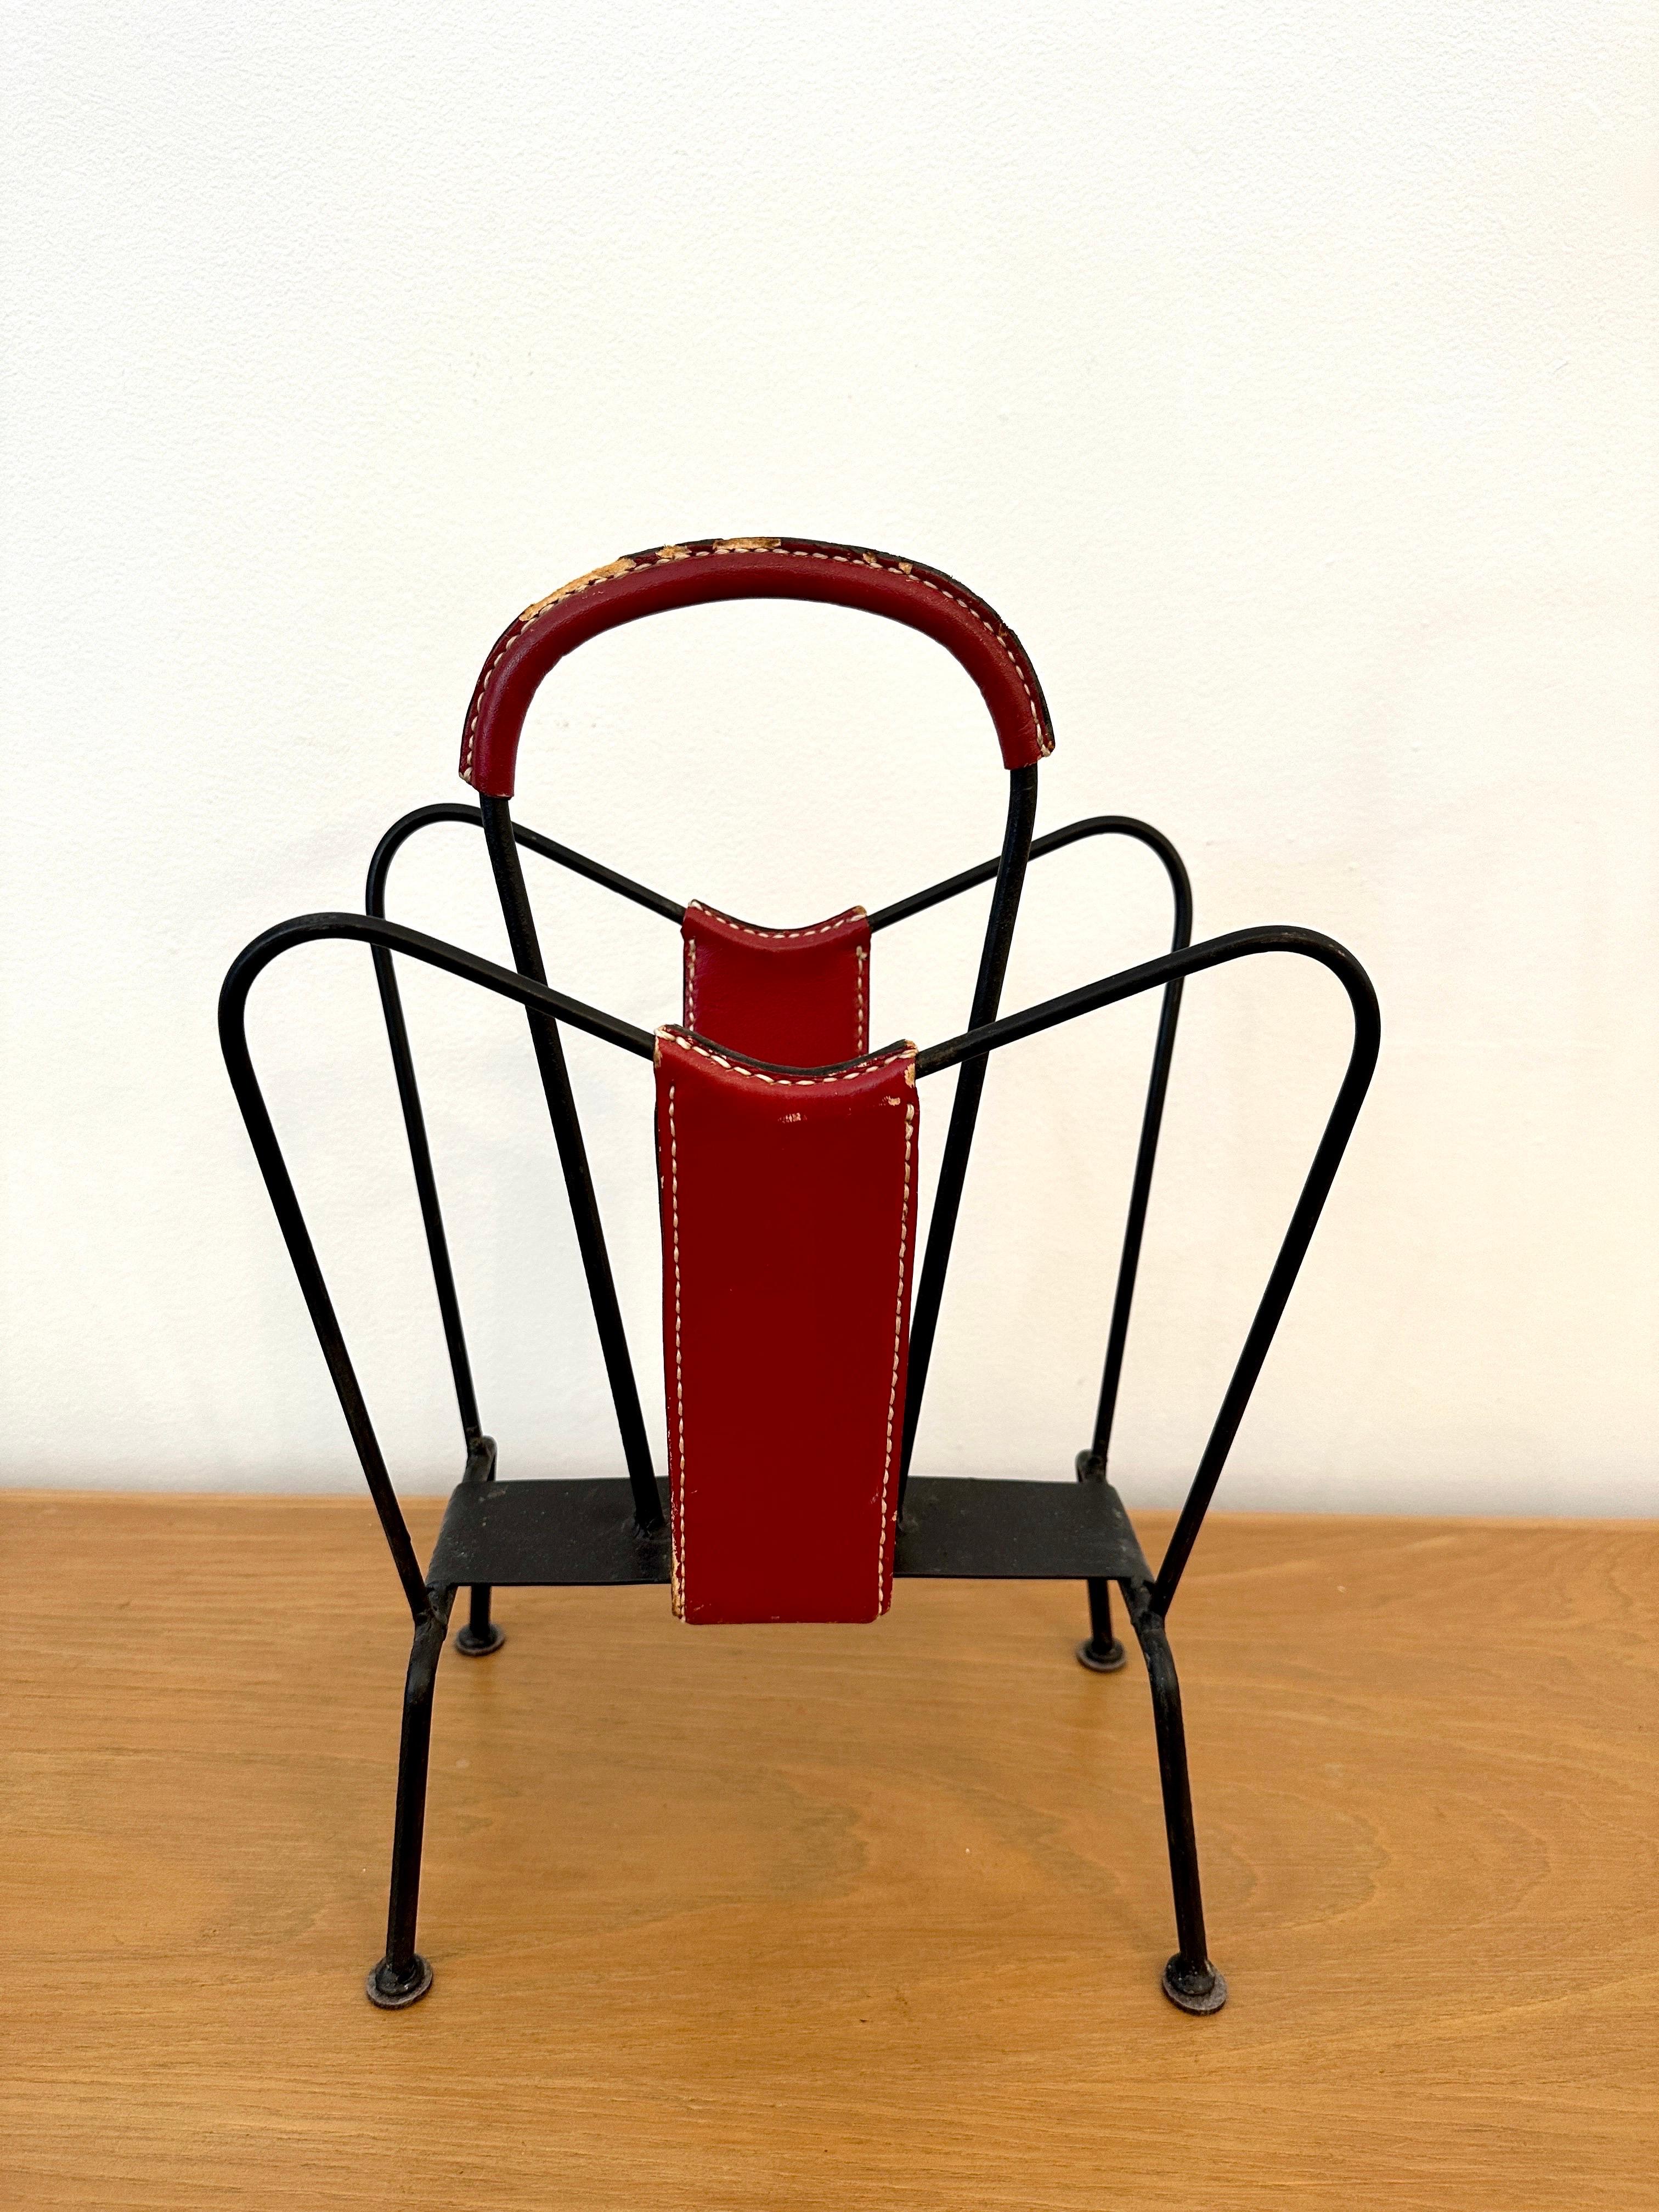 Porte-revues conçu par Jacques Adnet et fabriqué dans son propre atelier, France, 1950. Le porte-revues a un cadre solide et est rehaussé de cuir rouge cousu à la main. Le support présente une belle patine d'âge et d'usage, et est entièrement dans